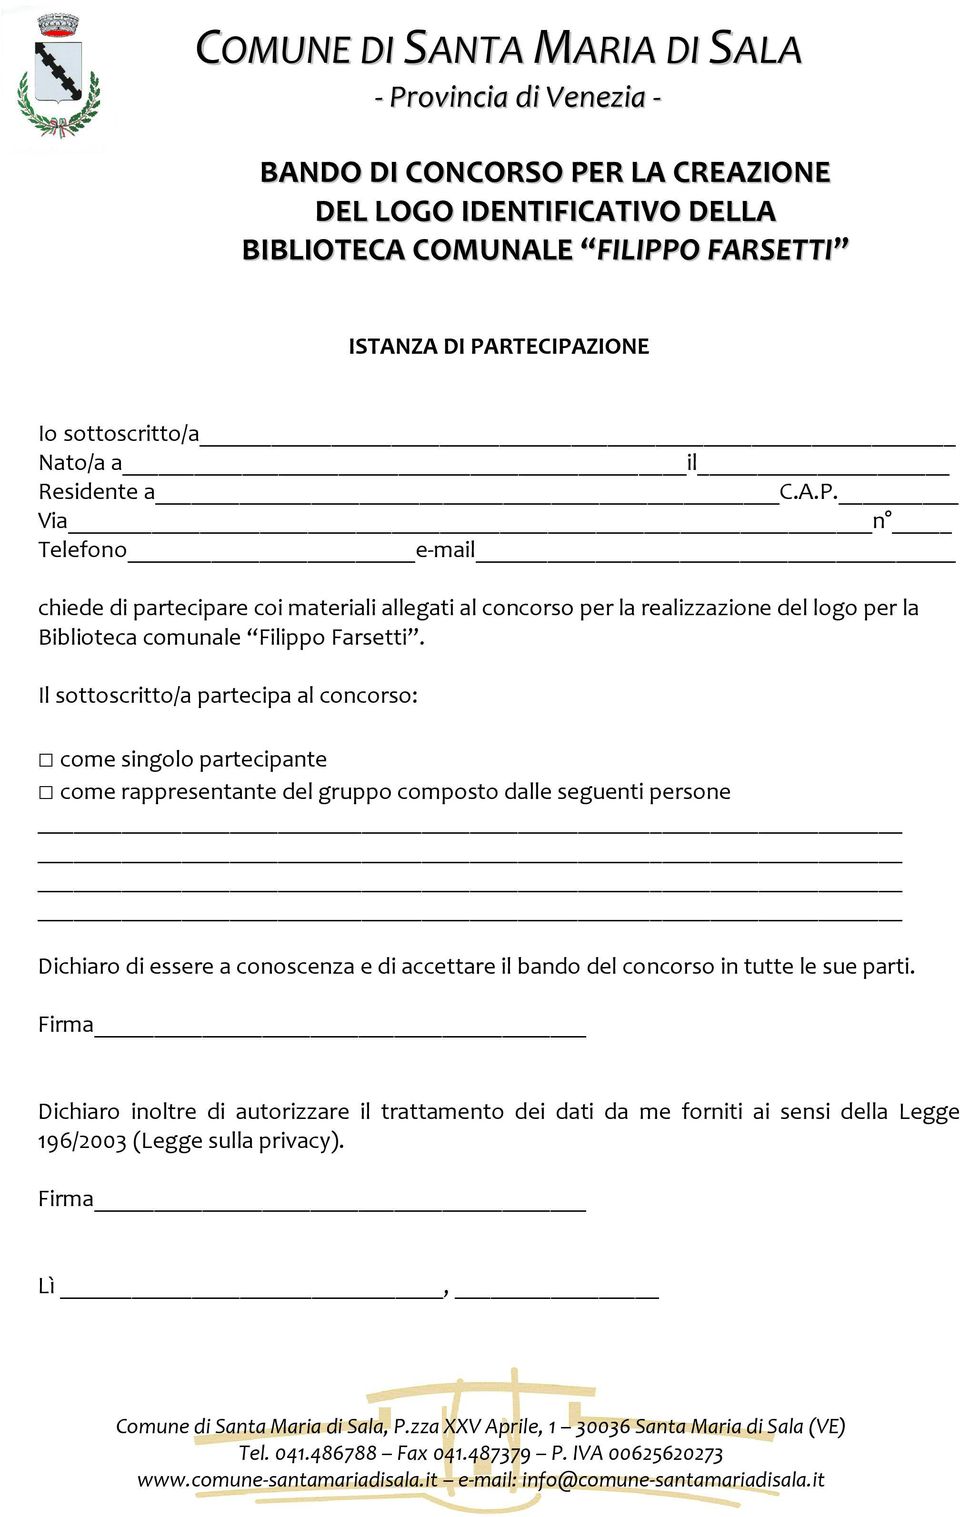 Via n Telefono e-mail chiede di partecipare coi materiali allegati al concorso per la realizzazione del logo per la Biblioteca comunale Filippo Farsetti.